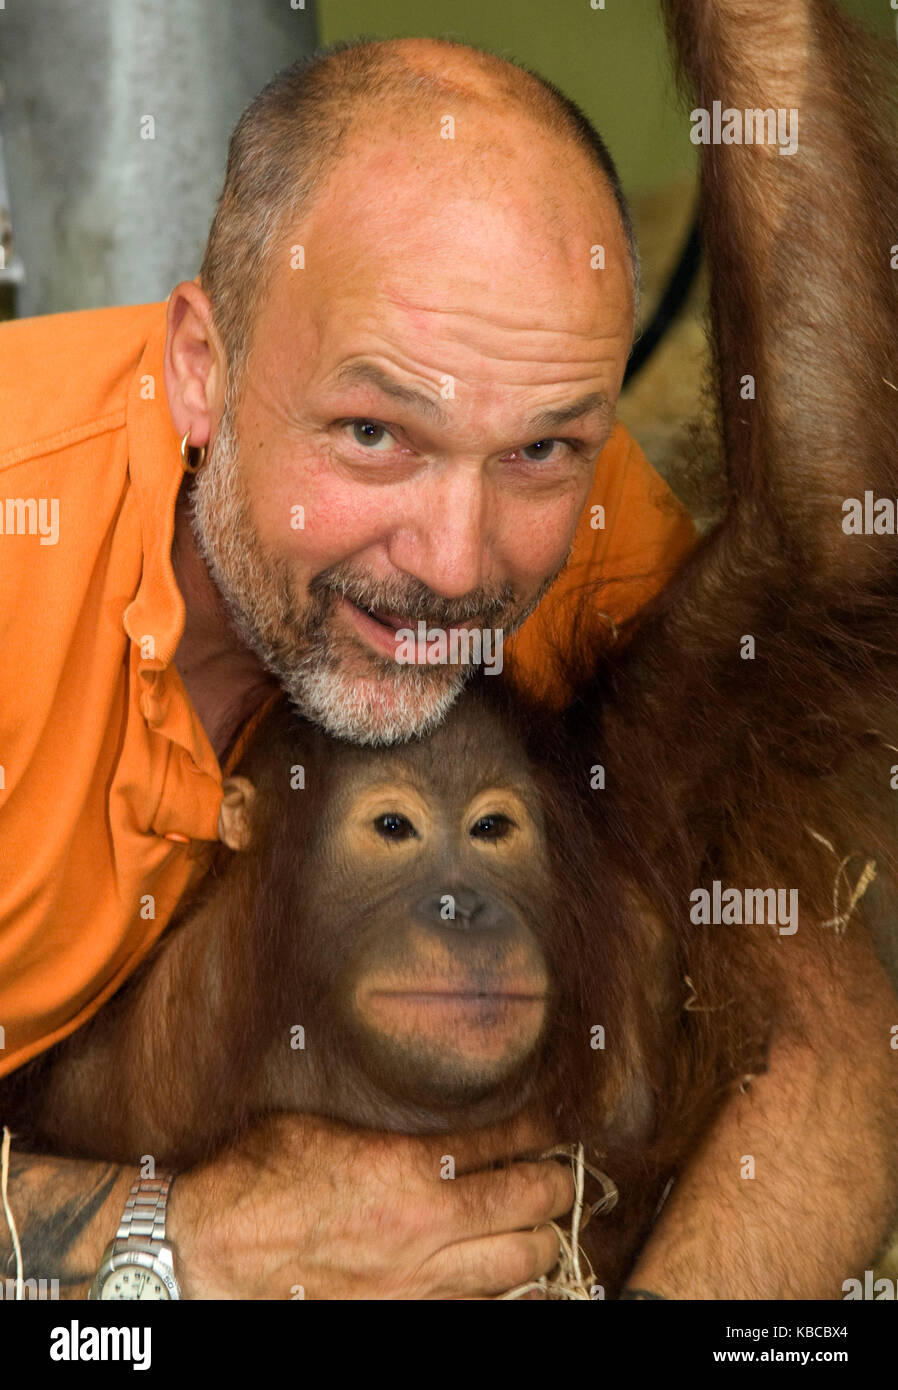 Jeremy keeling, co fondatore del mondo di scimmia in dorset, con una giovane orang utang, Foto Stock